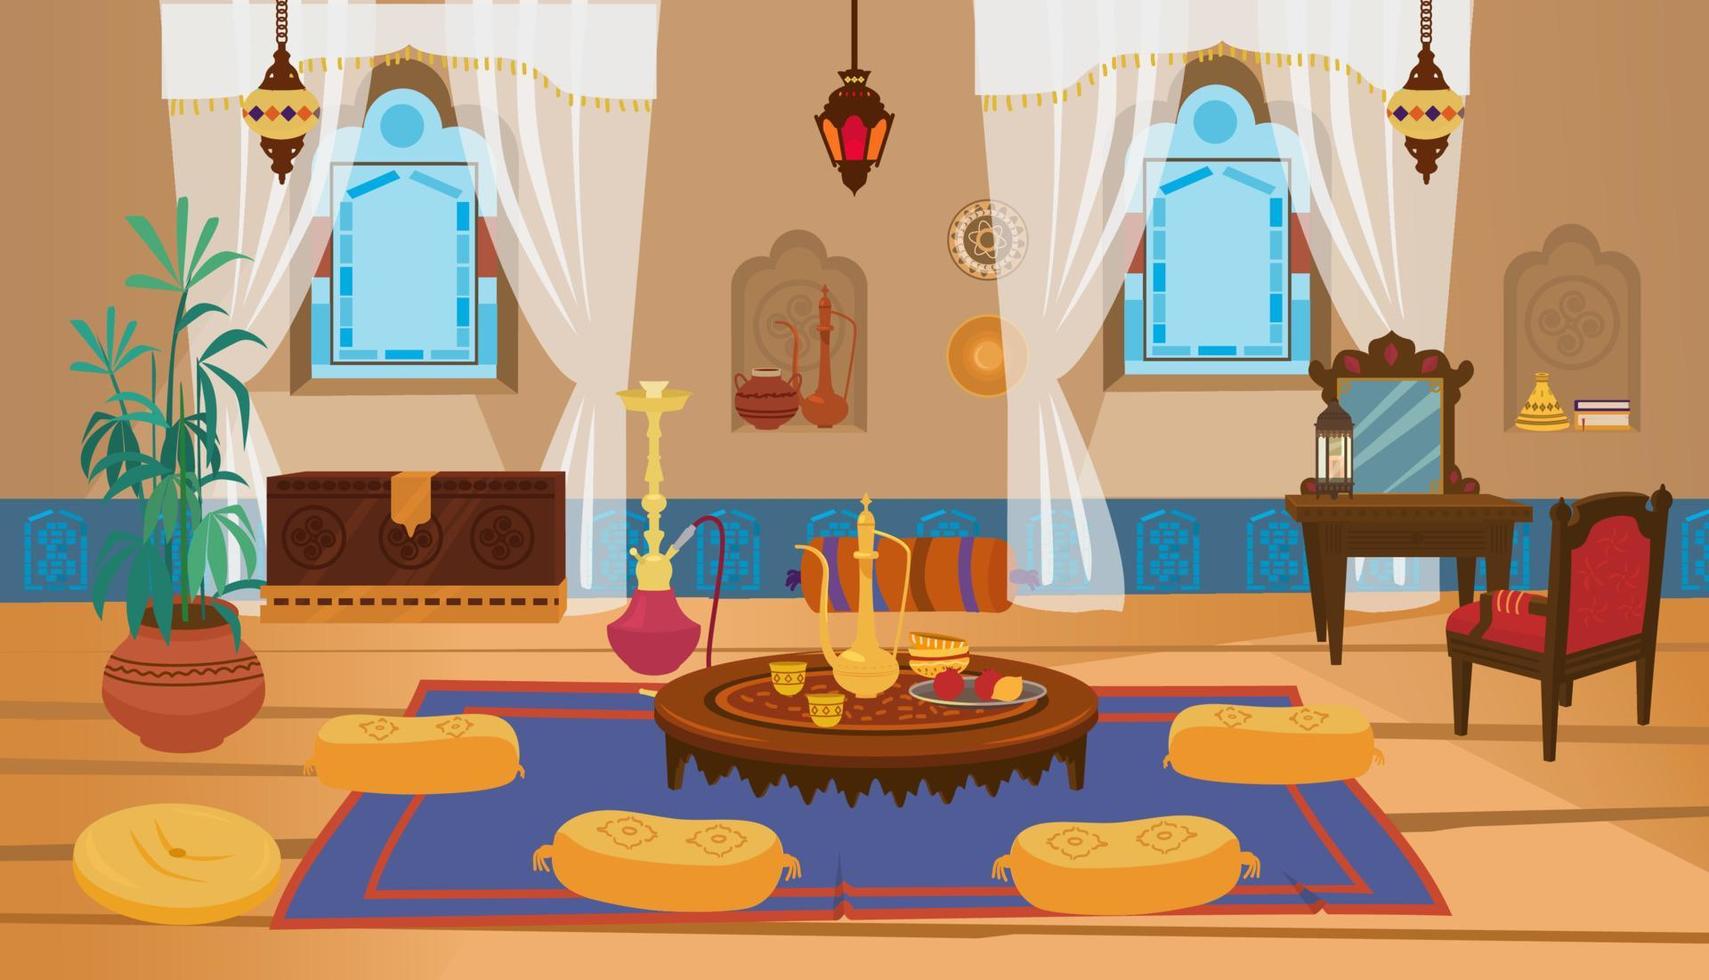 interior da sala de estar do Oriente Médio com móveis de madeira e elementos de decoração. mesa baixa redonda com bule e almofadas, penteadeira com cadeira, lanternas com vitrais. vetor de desenhos animados.